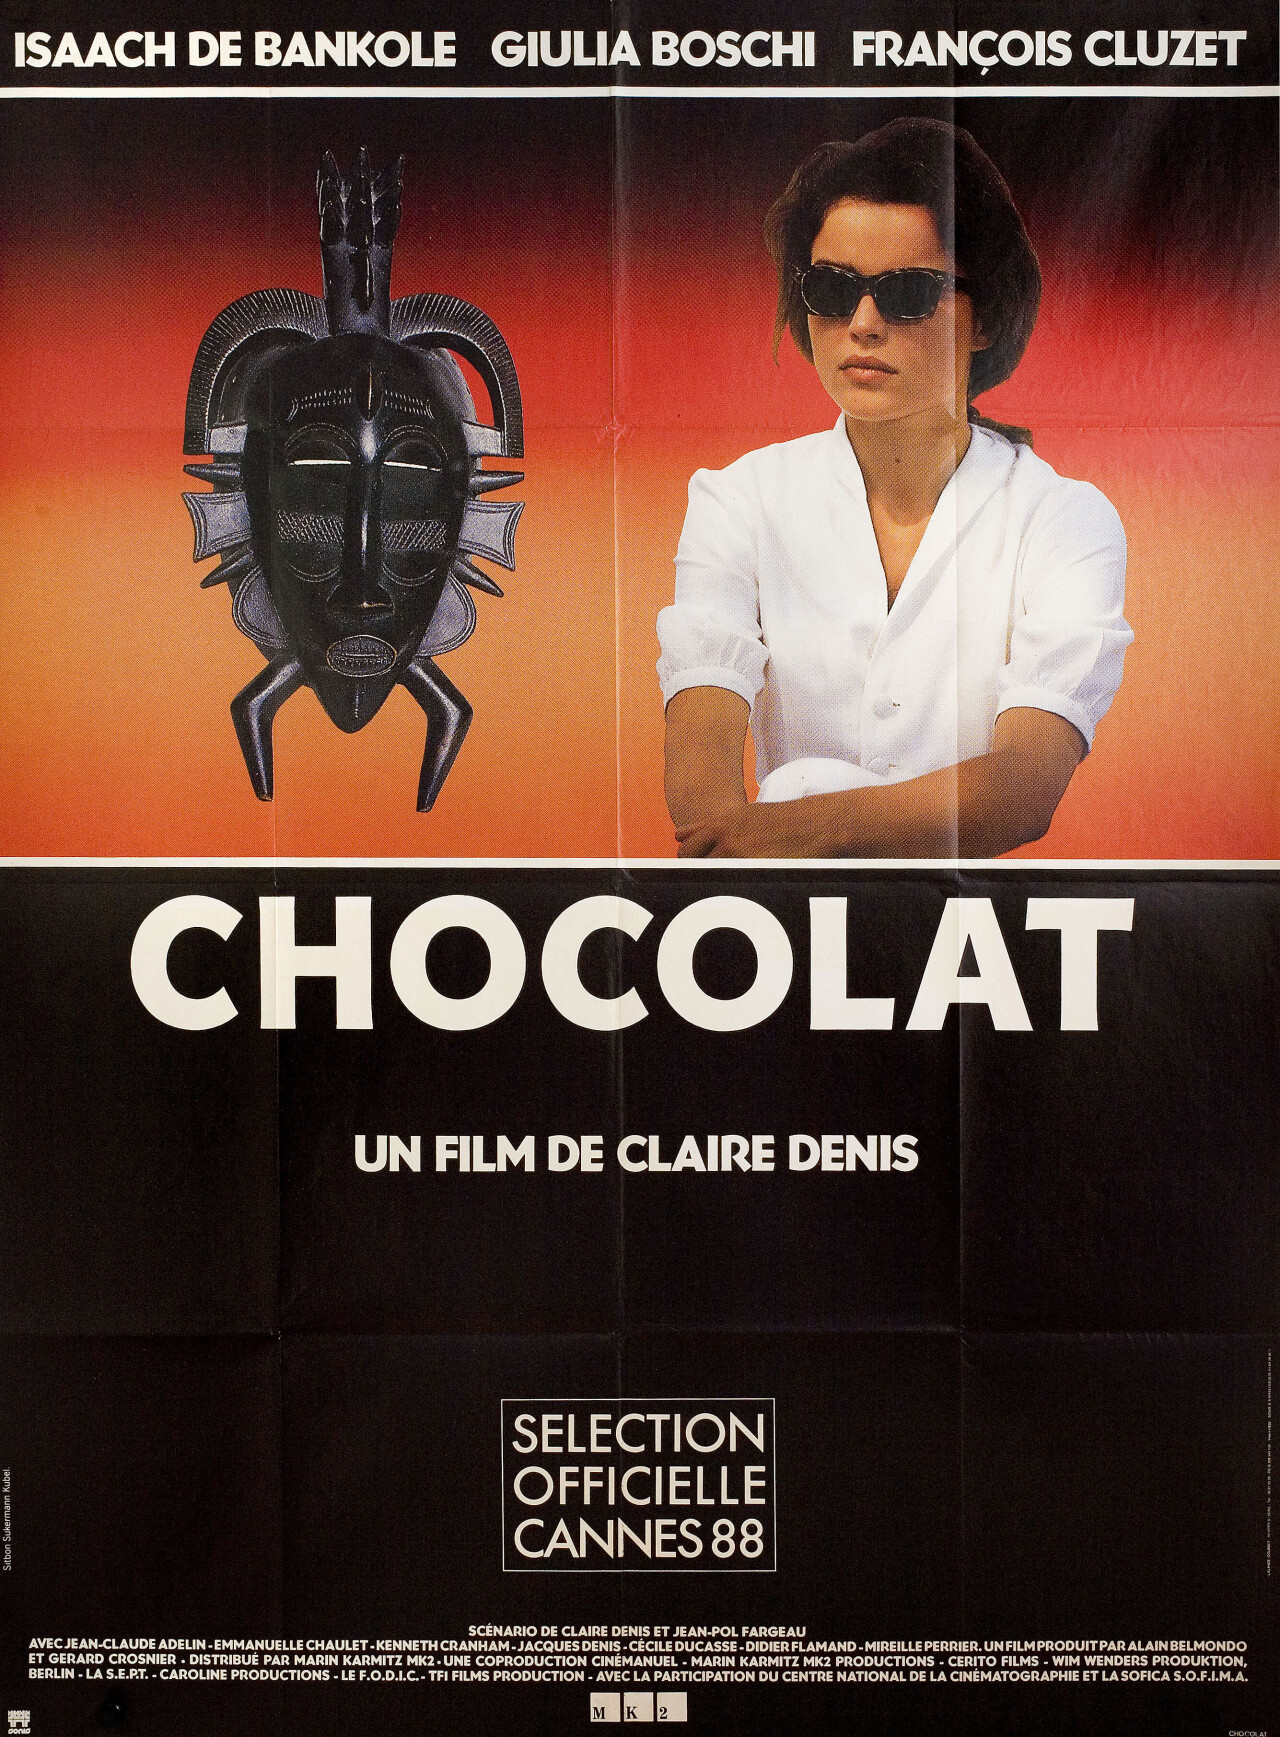 Шоколад (Chocolat, 1988), режиссёр Клер Дени, минималистичный постер к фильму (Франция, 1989 год)